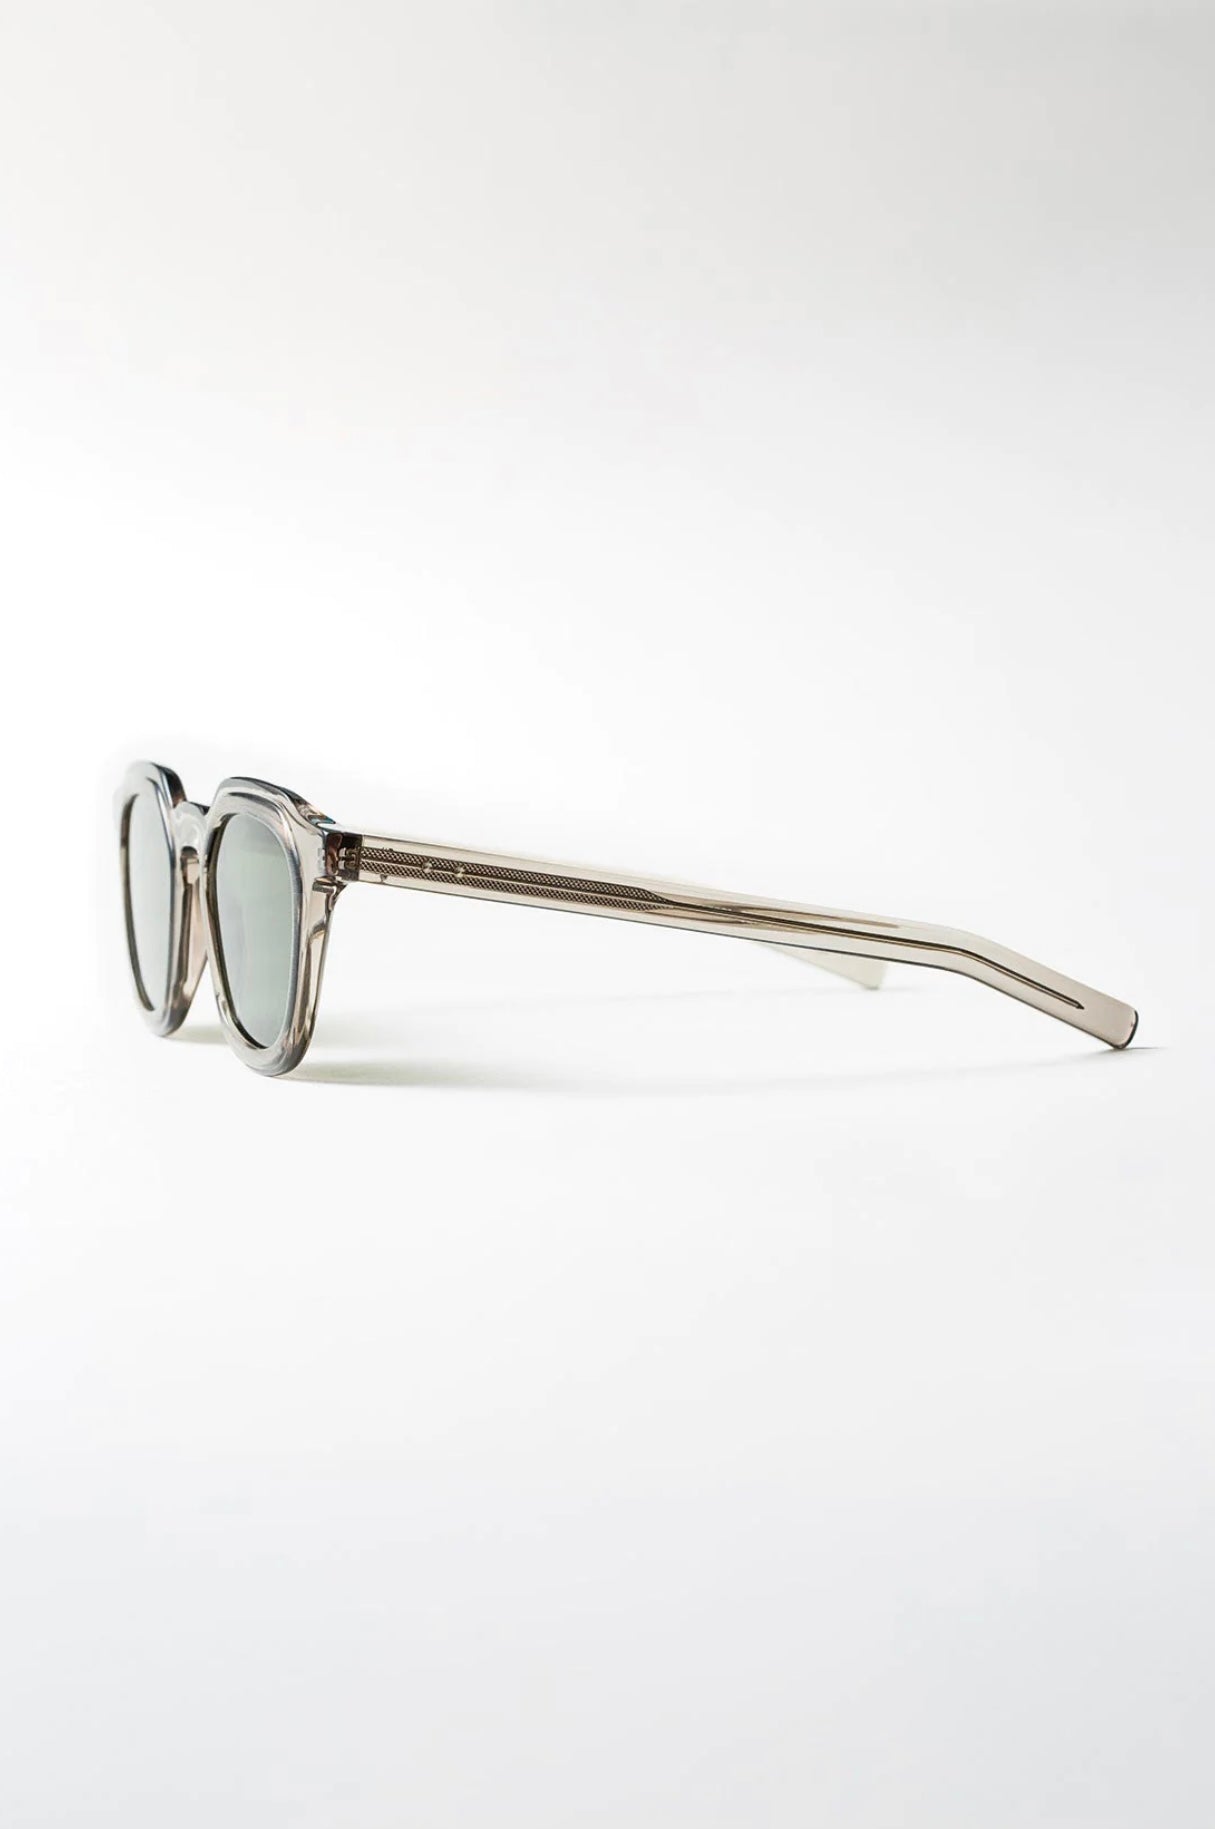 Oscar Magnuson - Sunglasses Deckard OM5 Warm Grey